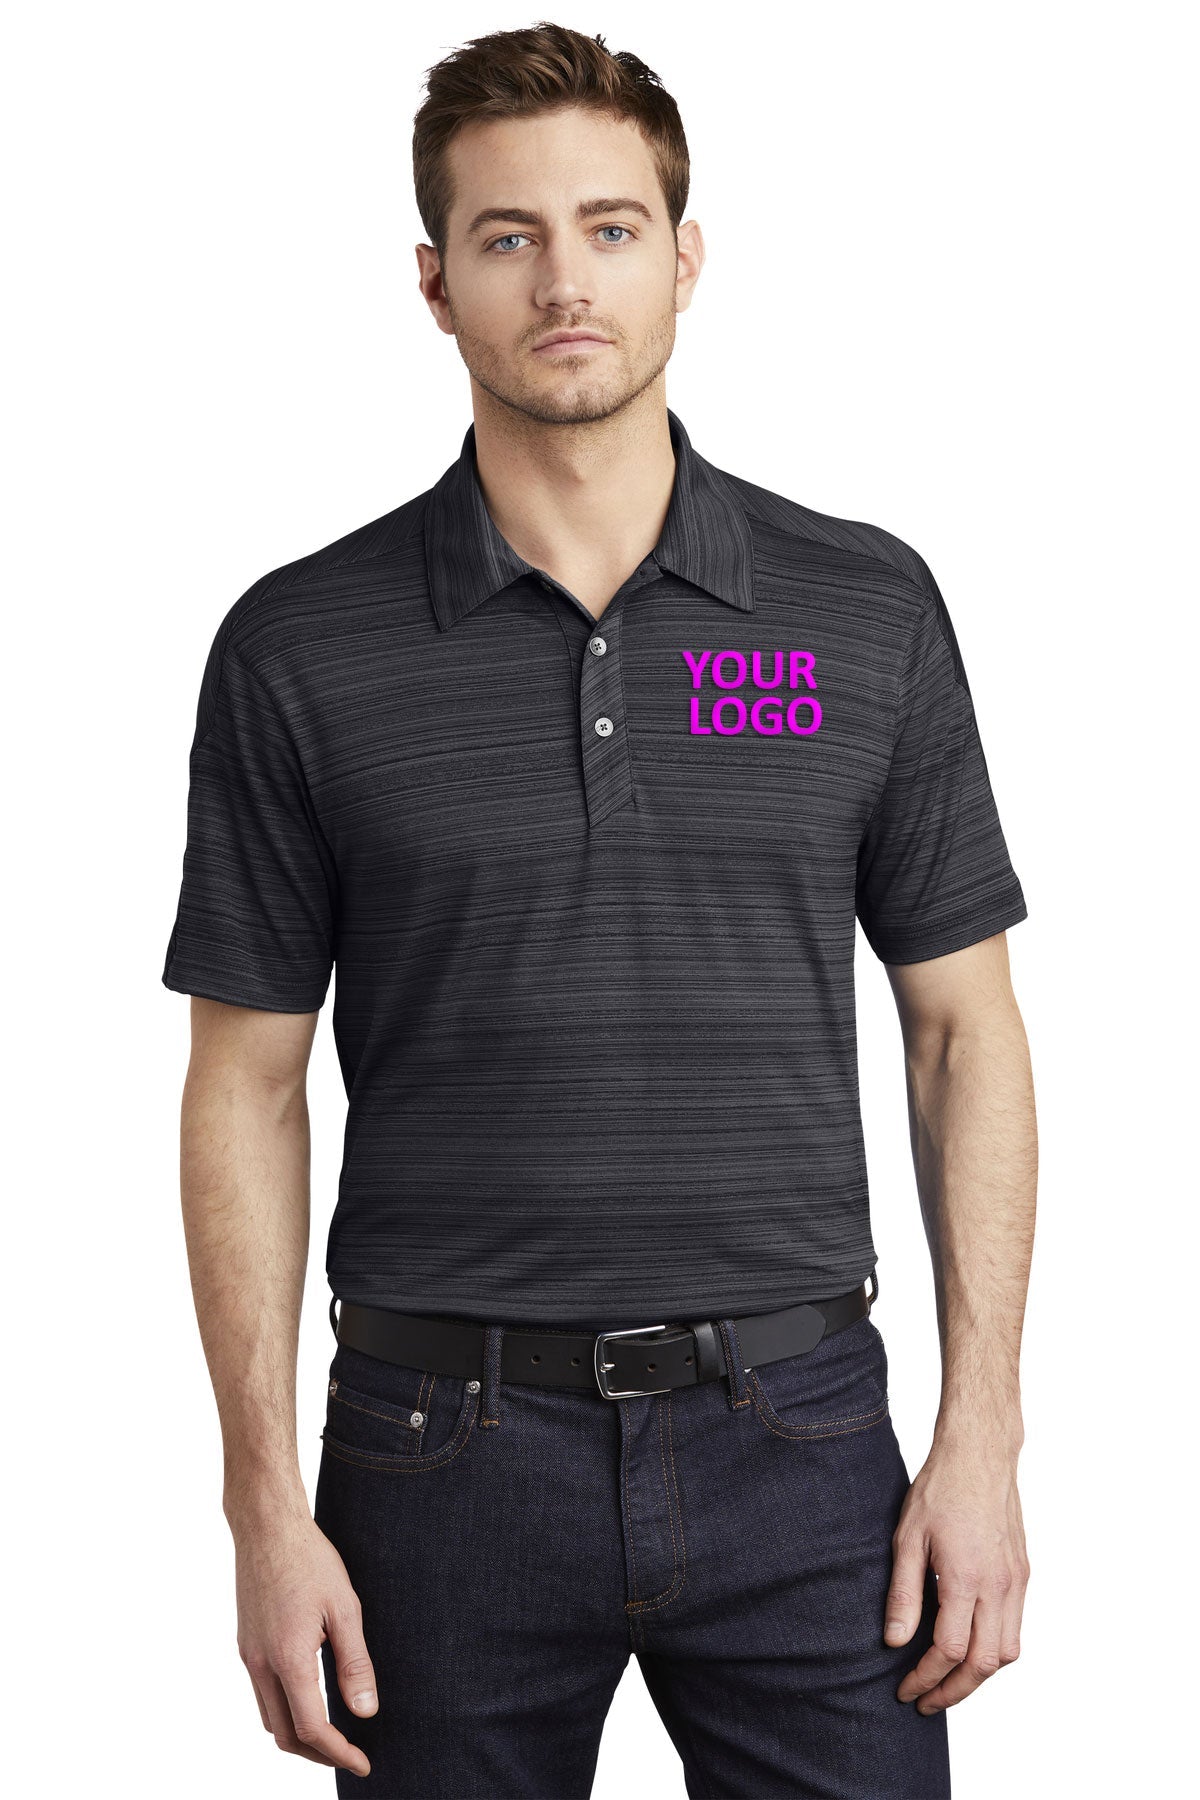 OGIO Blacktop OG116 work polo shirts with logo